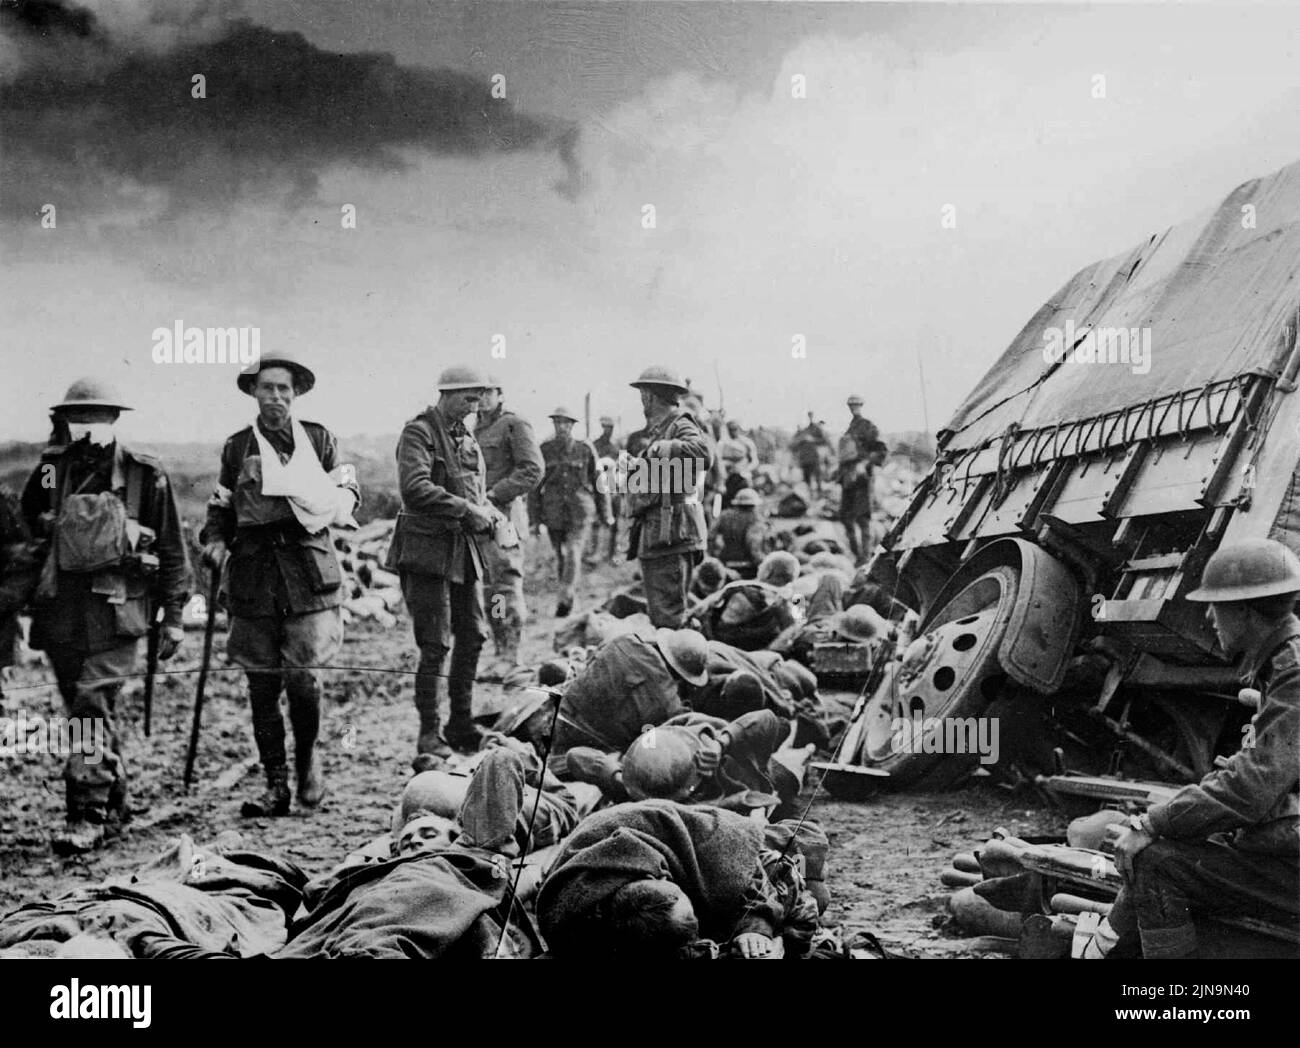 MENIN ROAD, BELGIO - 20 settembre 1917 - Battaglia di Menin Road. L'esercito australiano ha ferito sulla strada di Menin, vicino a Birr Cross Road sul fronte occidentale i Foto Stock